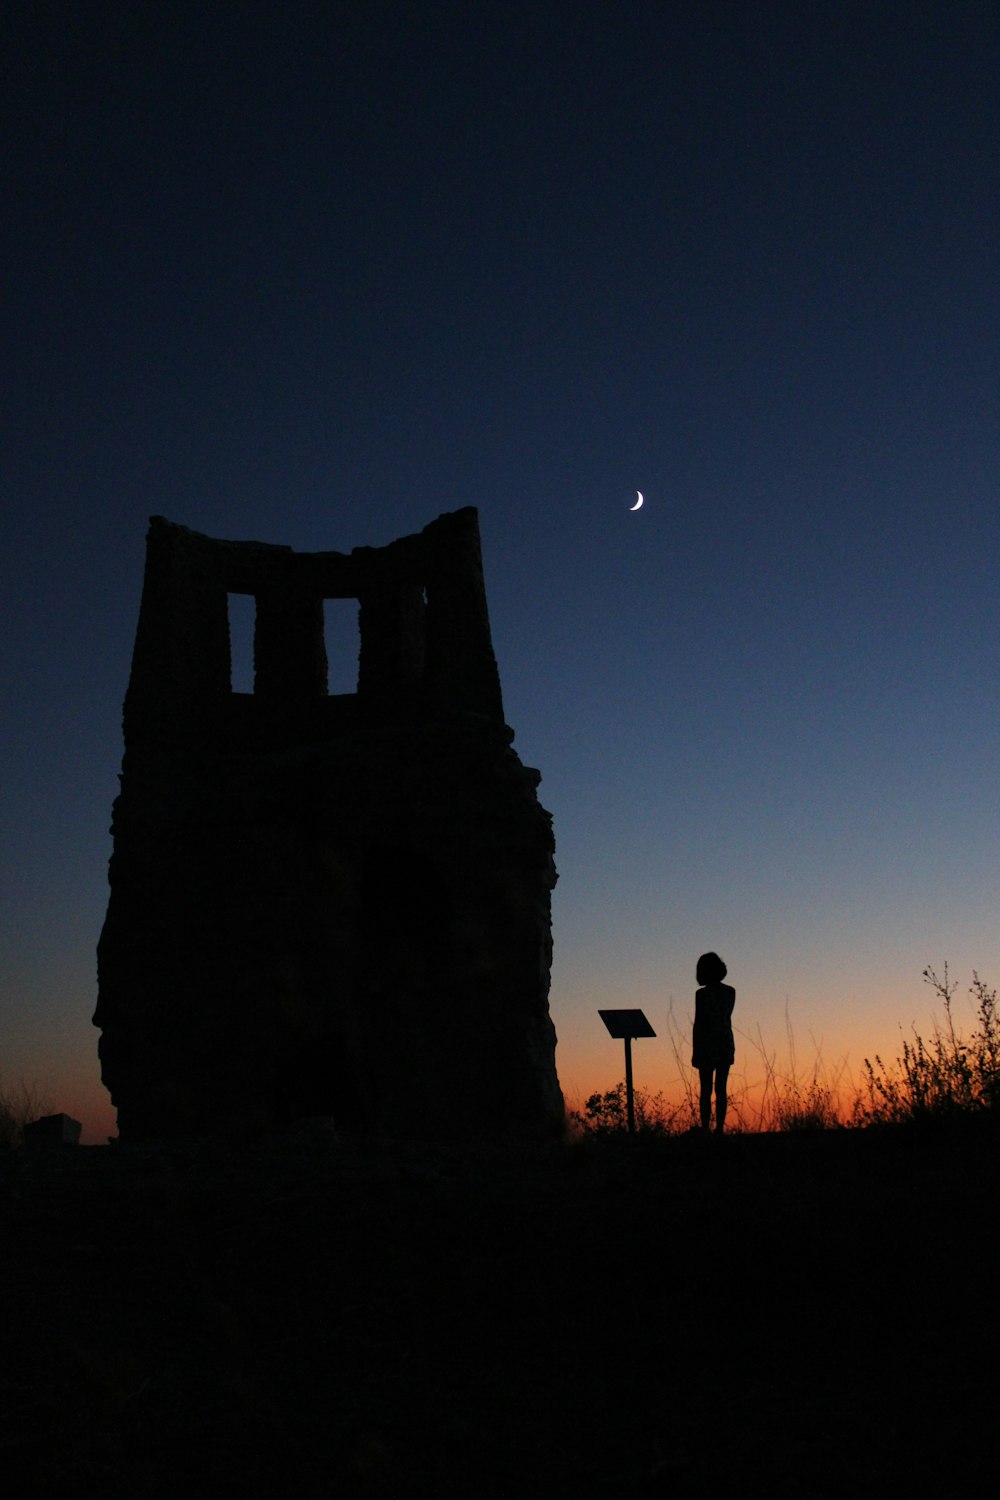 Silhouette de personnes debout près de la formation rocheuse pendant la nuit